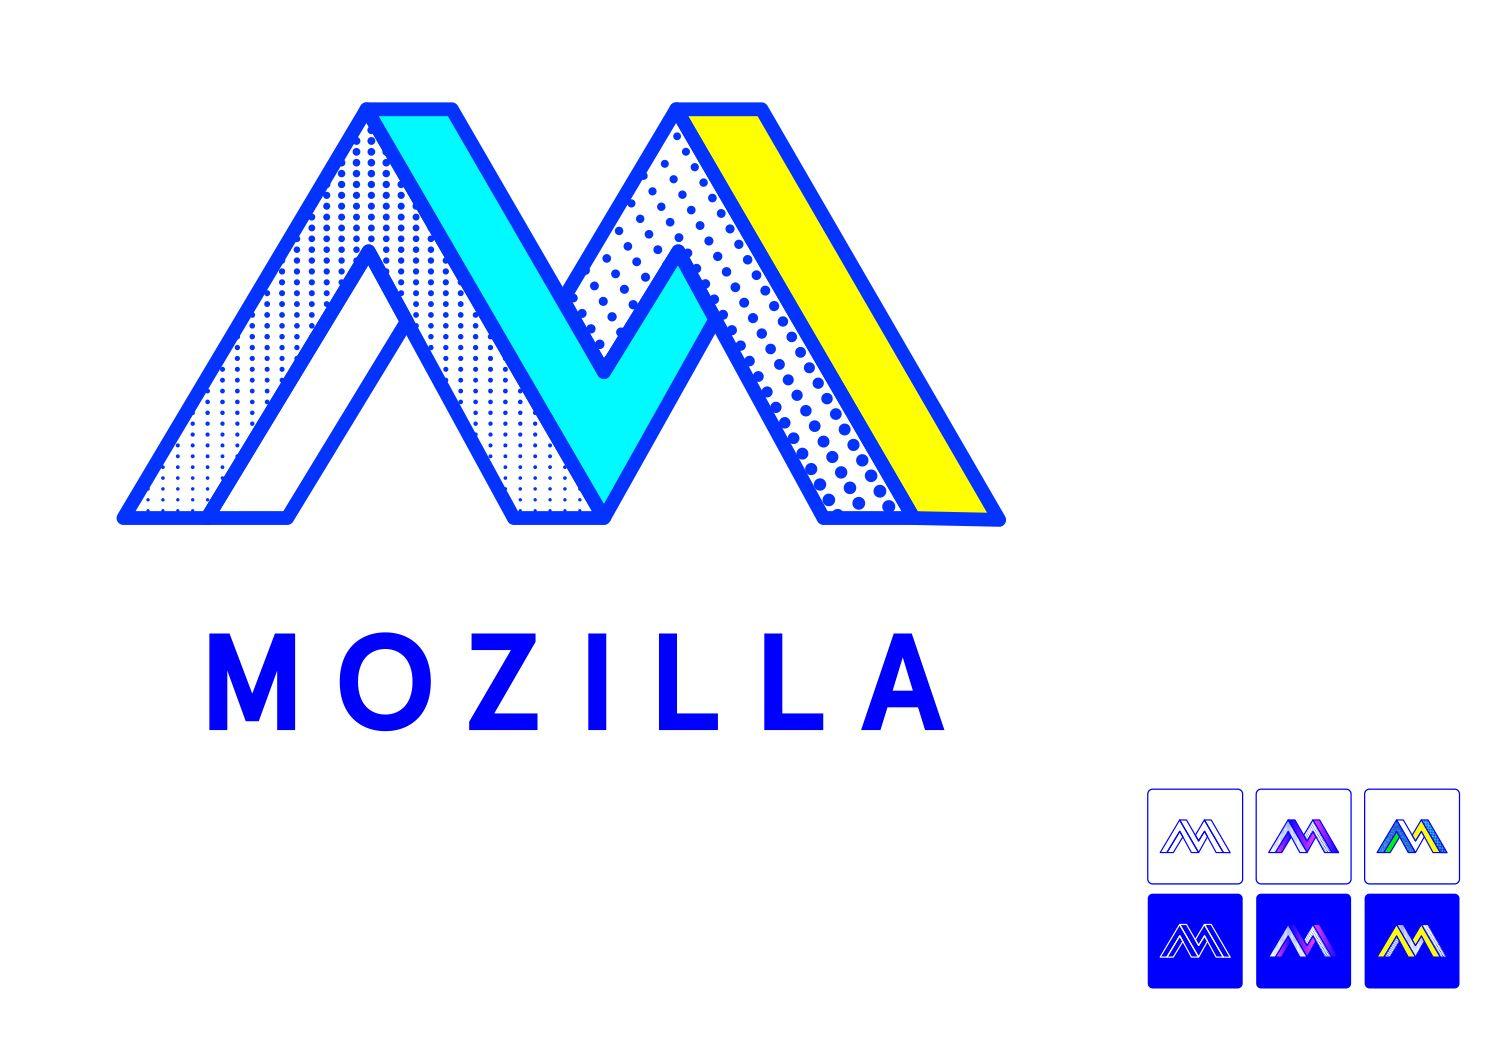 Mozilla Logo - Now for the fun part of Mozilla's logo design. Open Design